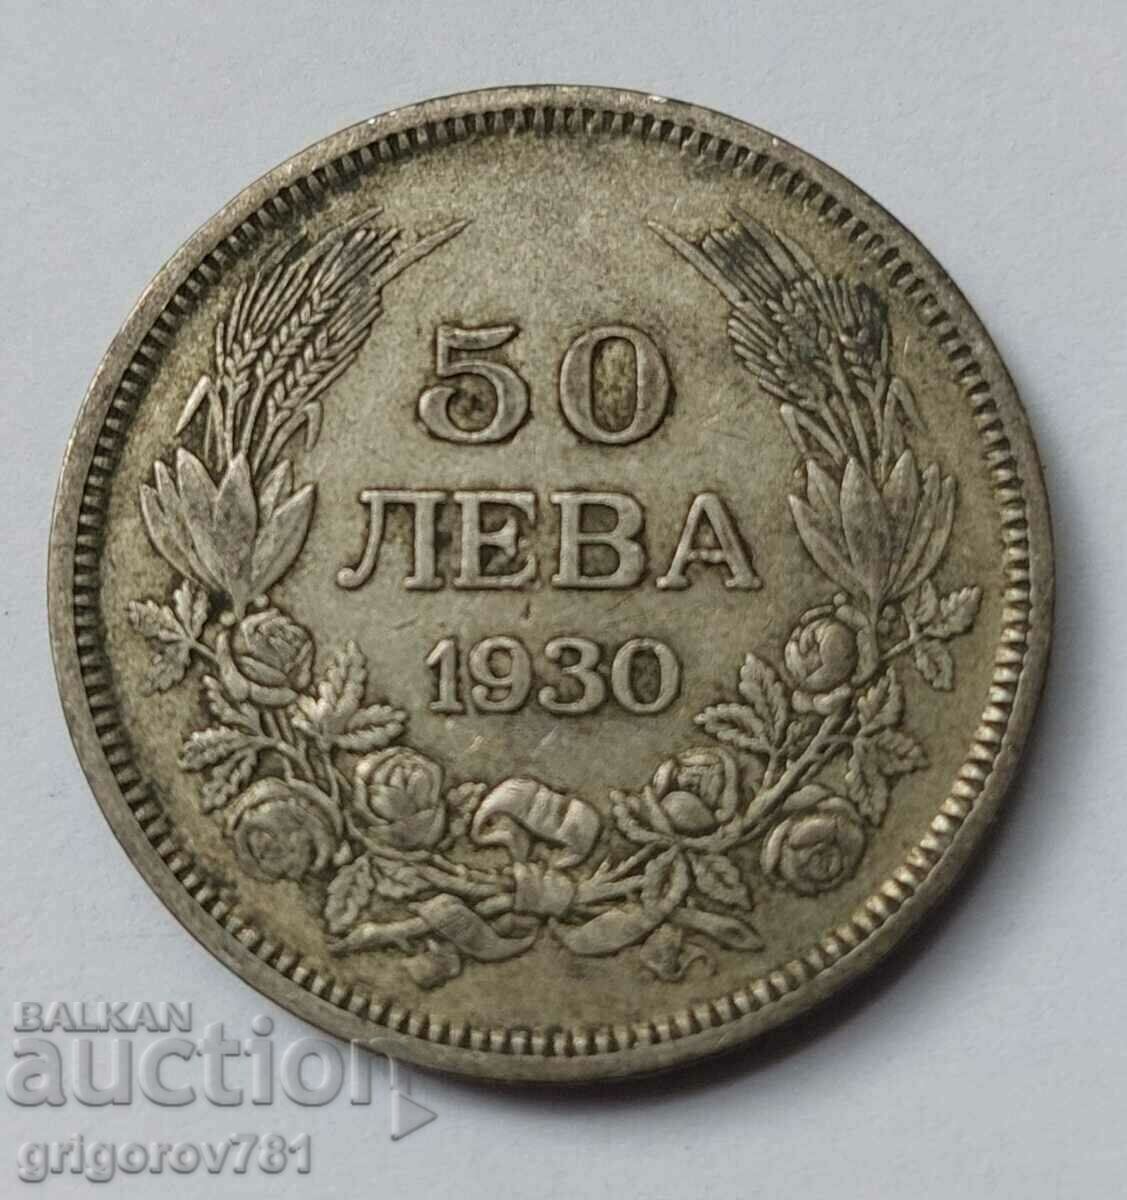 Ασήμι 50 λέβα Βουλγαρία 1930 - ασημένιο νόμισμα #82